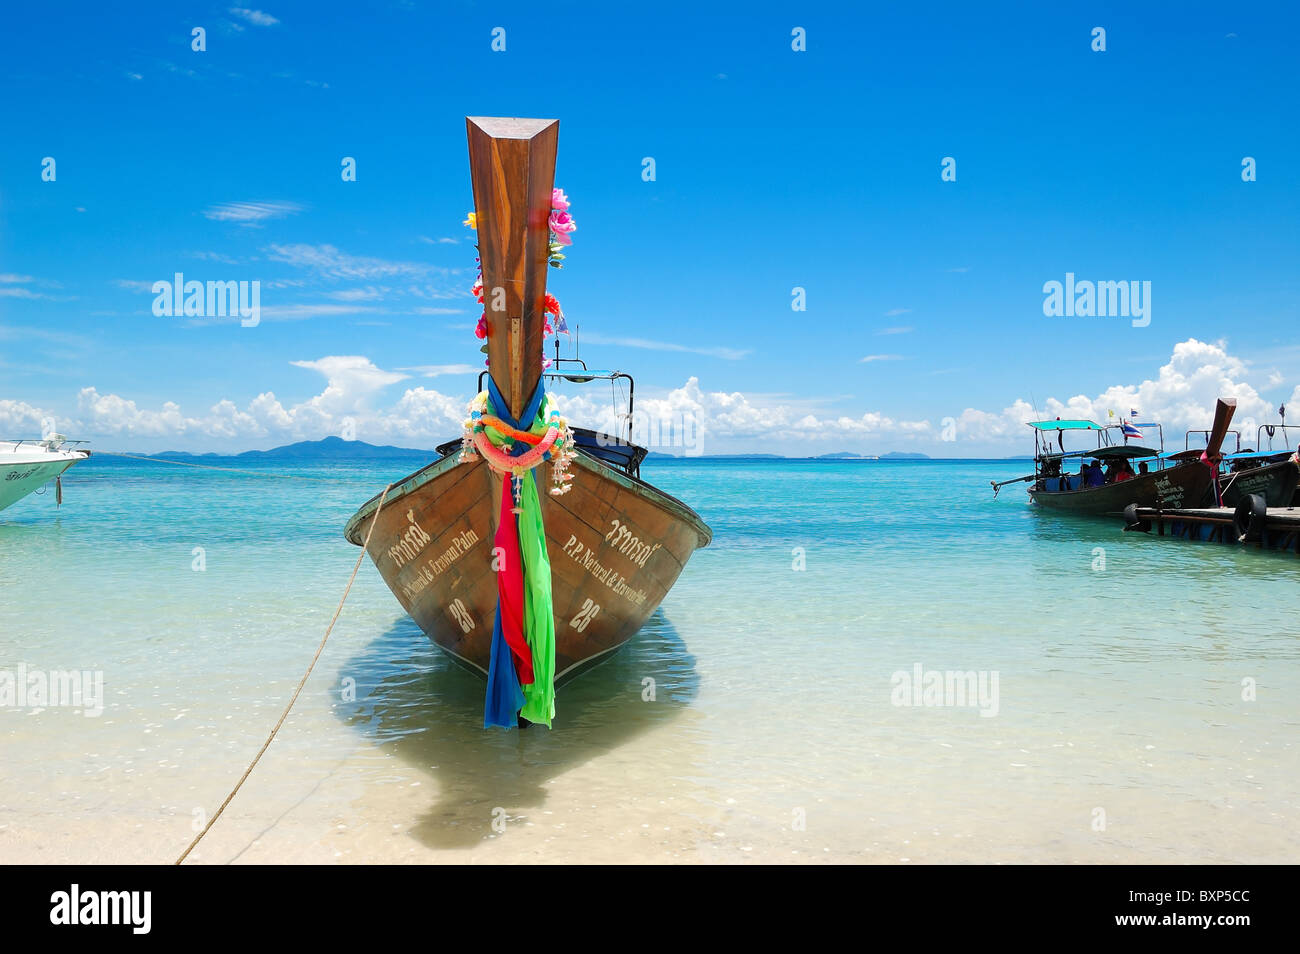 Traditional Thai style bateau sur l'eau turquoise de la plage de l'île de Phi Phi, Thaïlande Banque D'Images